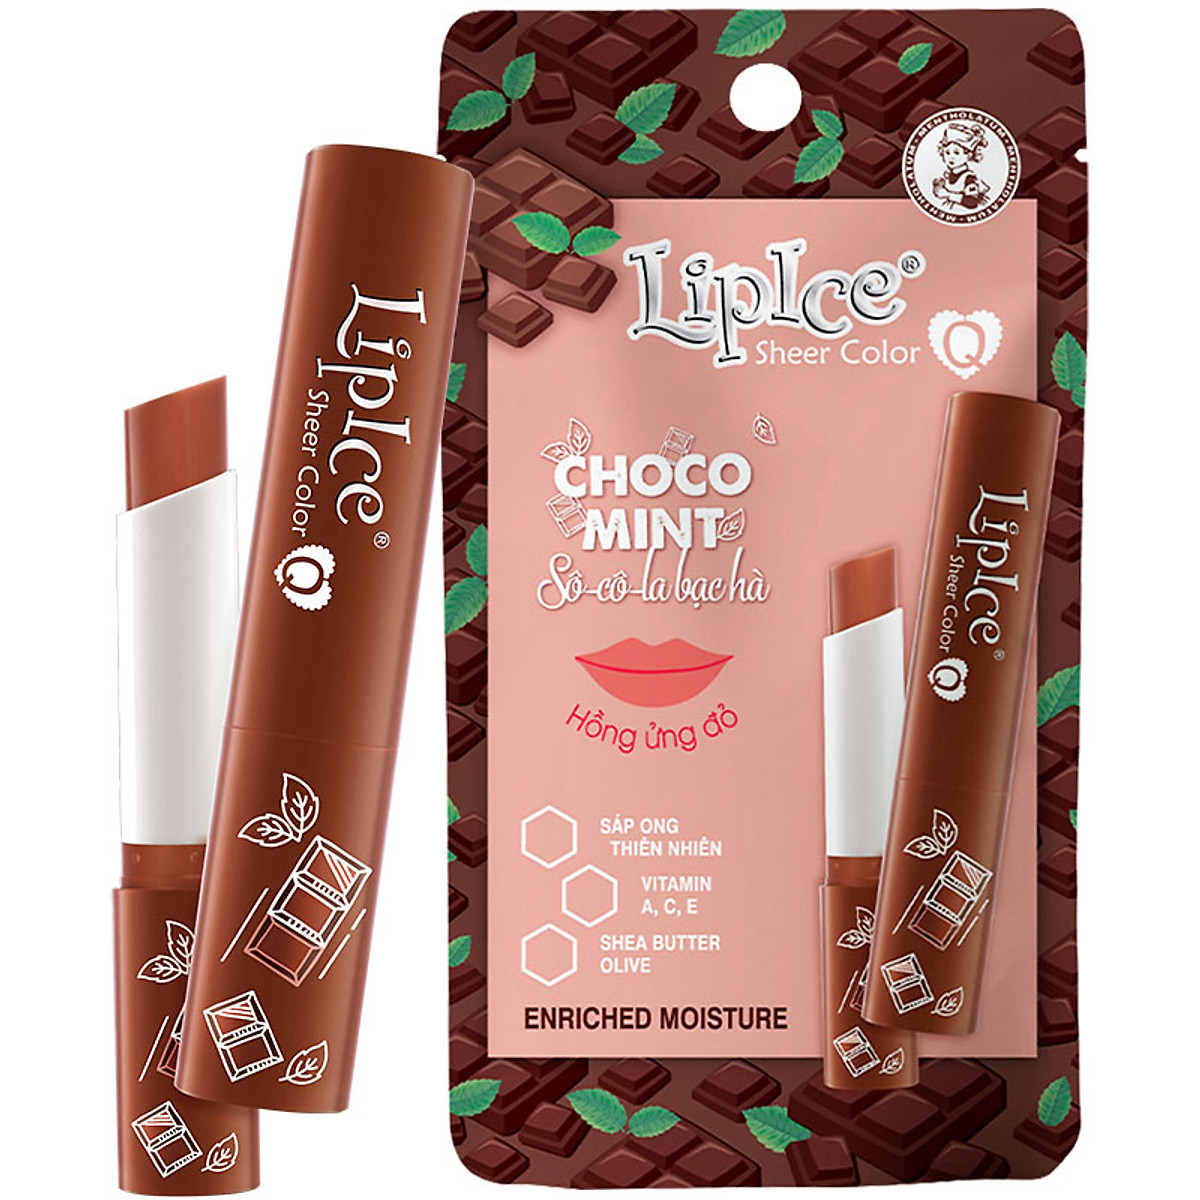 LipIce Son Dưỡng Chuyển Màu Hương Chocolate Bạc Hà Choco Mint Sheer Color Q 2.4g